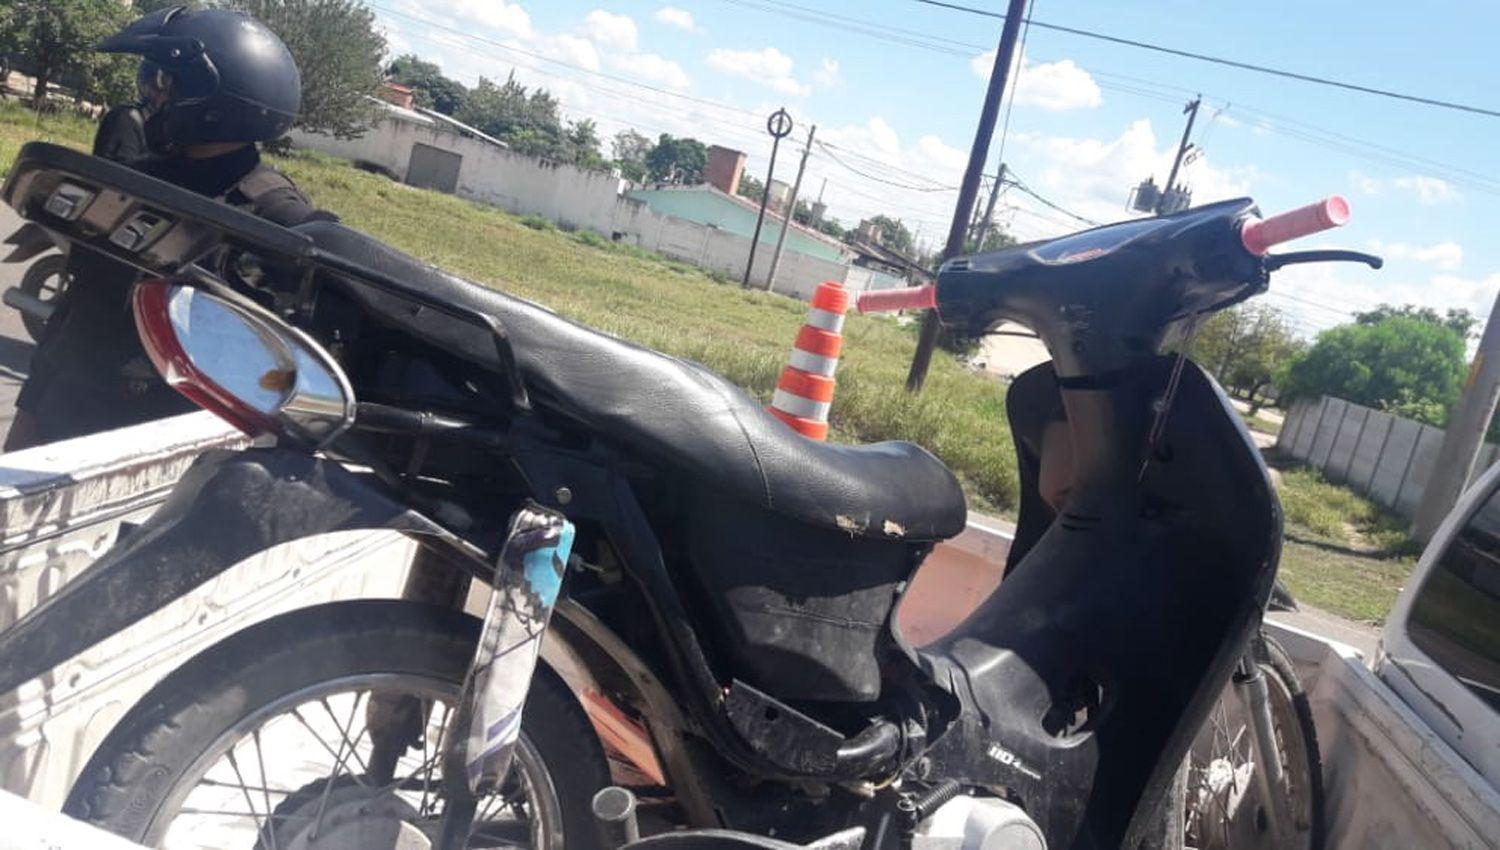 Recuperan una motocicleta robada en noviembre del antildeo pasado